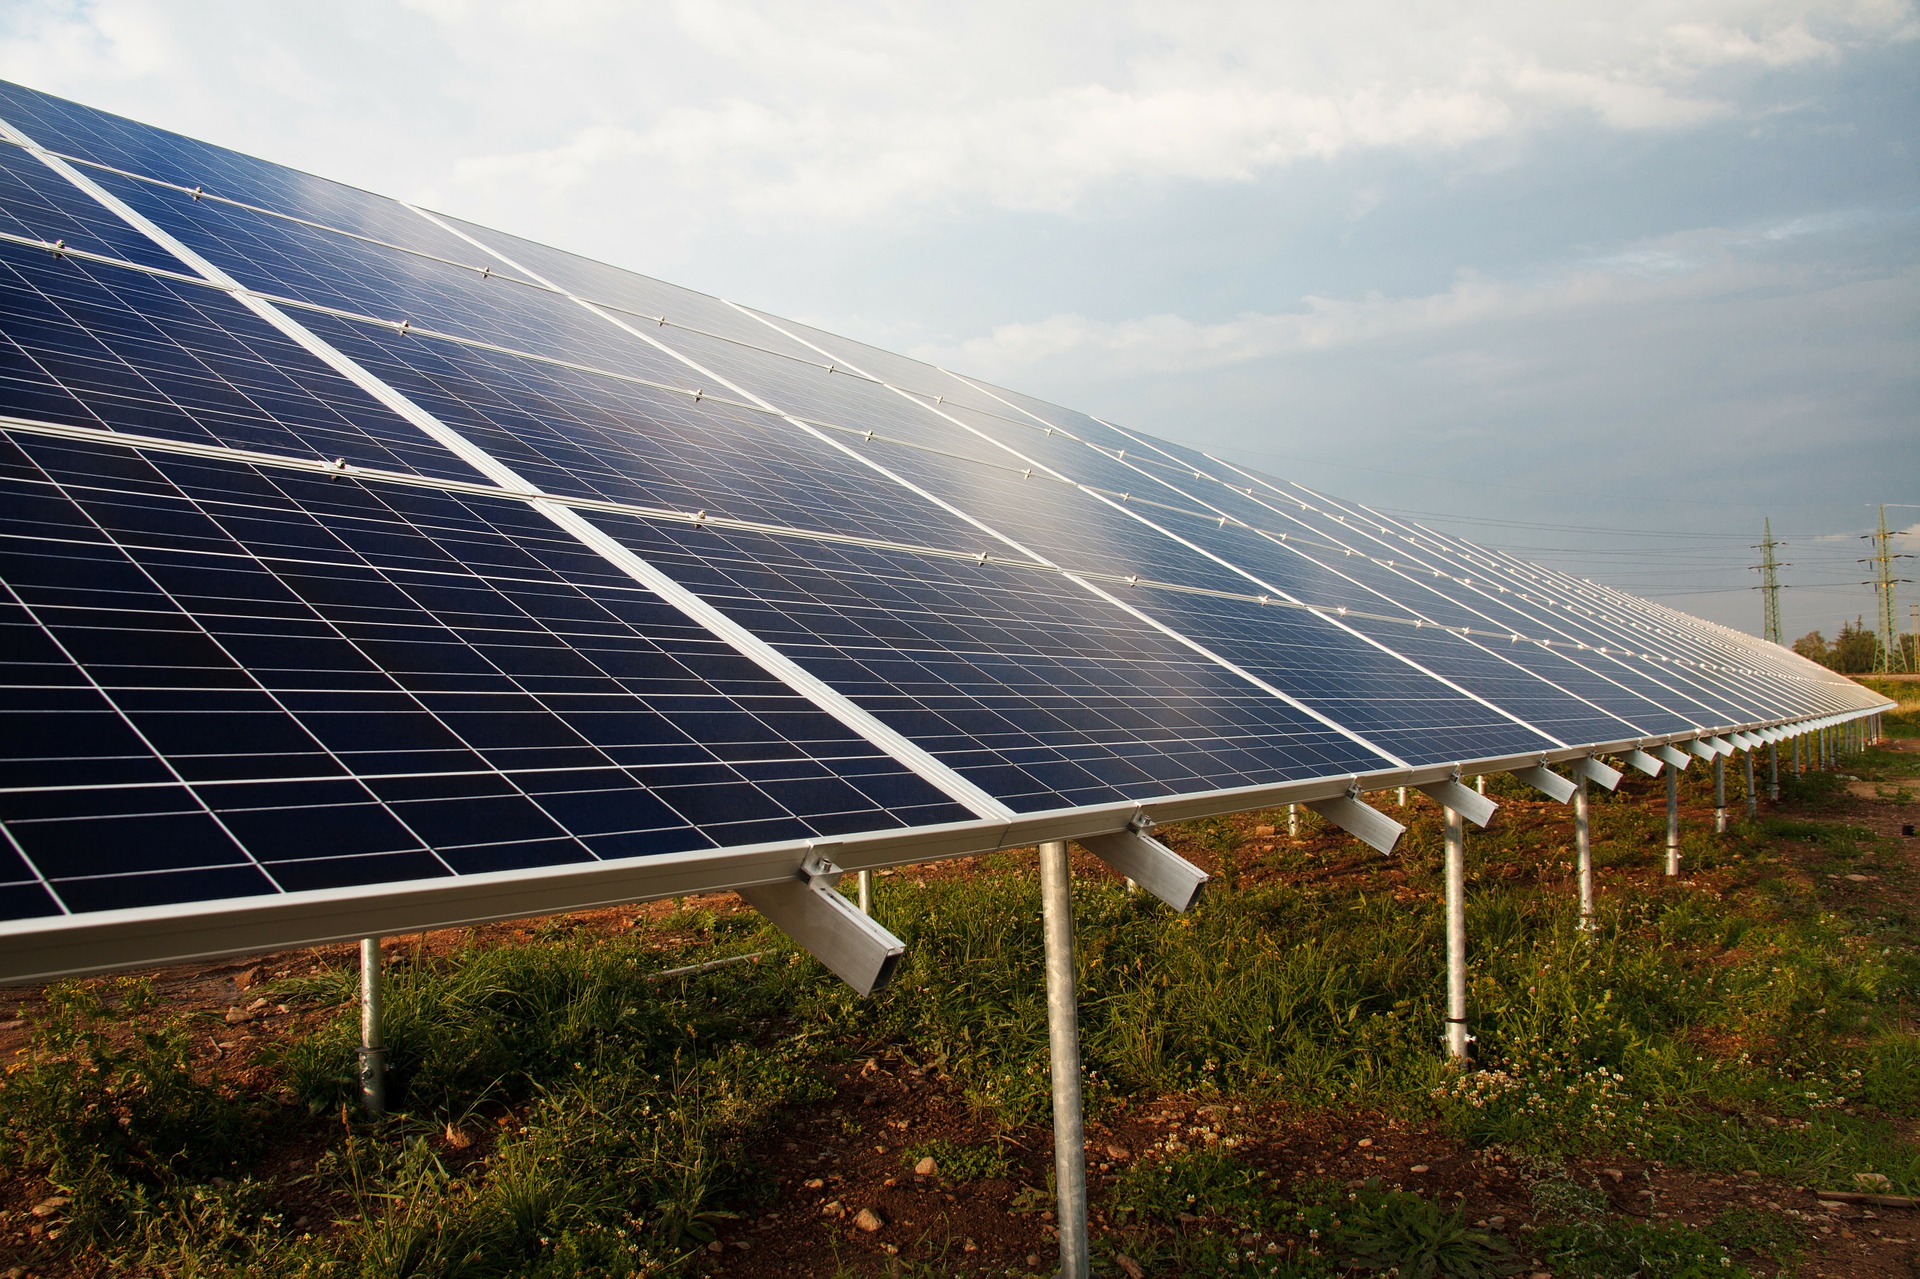 Číňan vynalezl solární panely, které umí generovat energii i ve tmě |  Zajímej.se